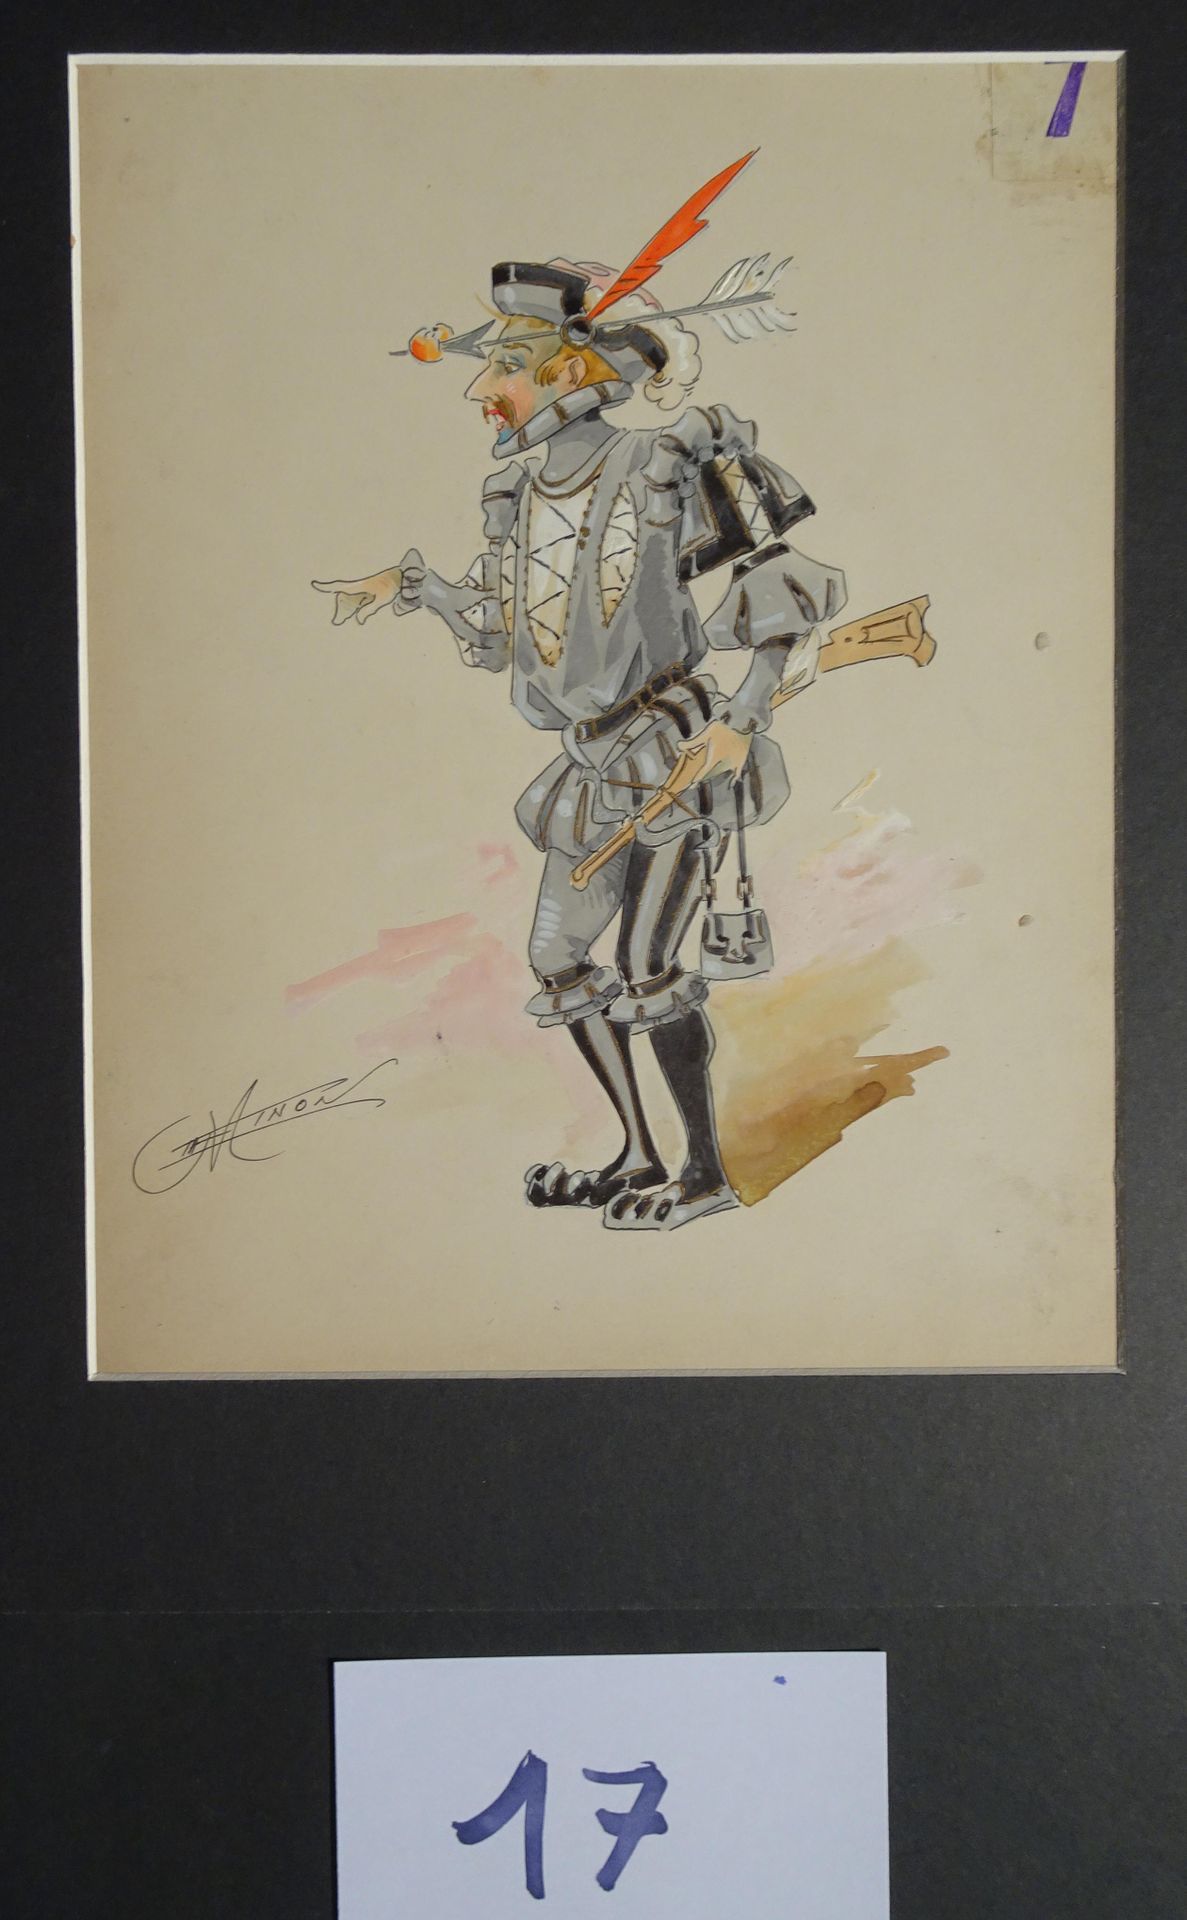 MINON MINON

"Le chasseur et le serrurier " c.1880 pour une revue. 2 maquettes d&hellip;